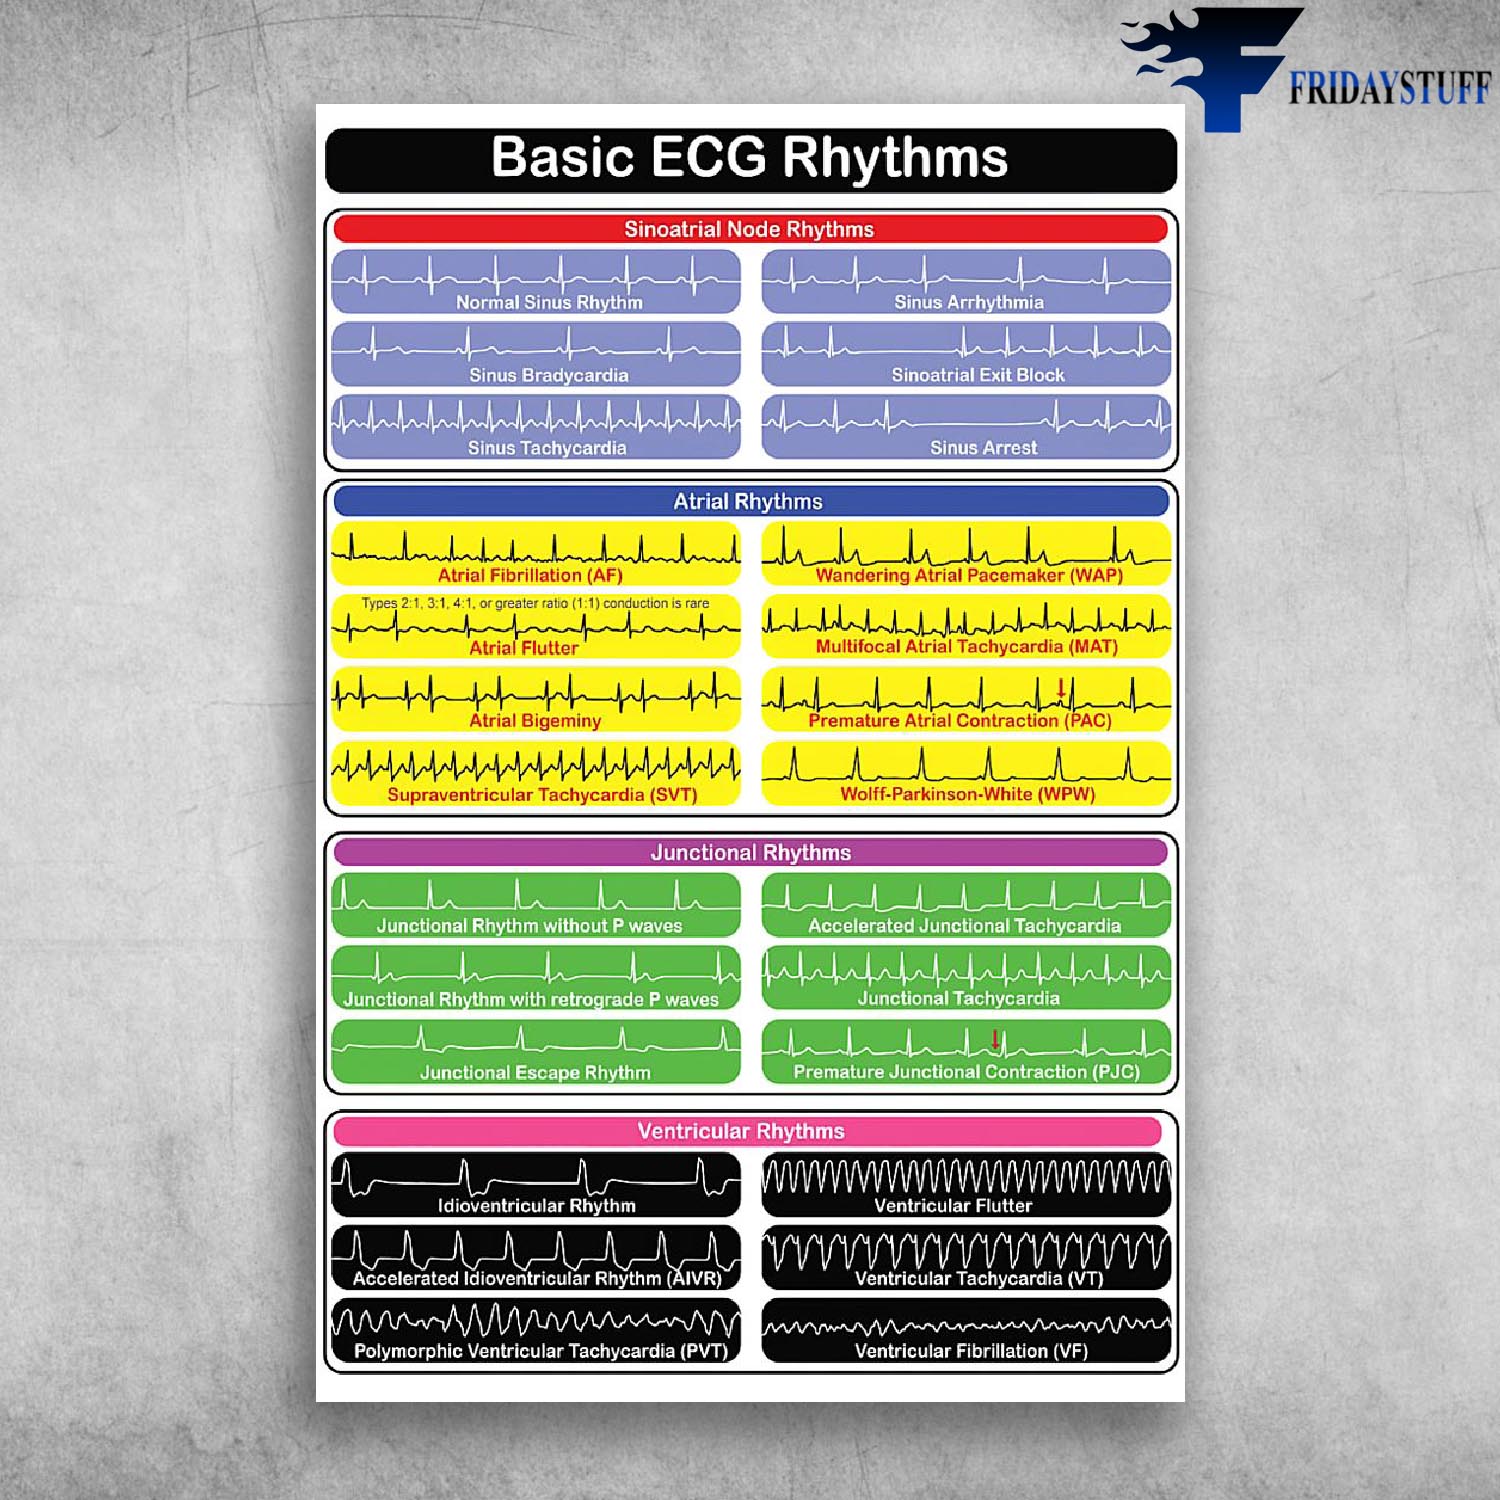 Basic EGG Rhythms Sinoatraial Node Rhythms